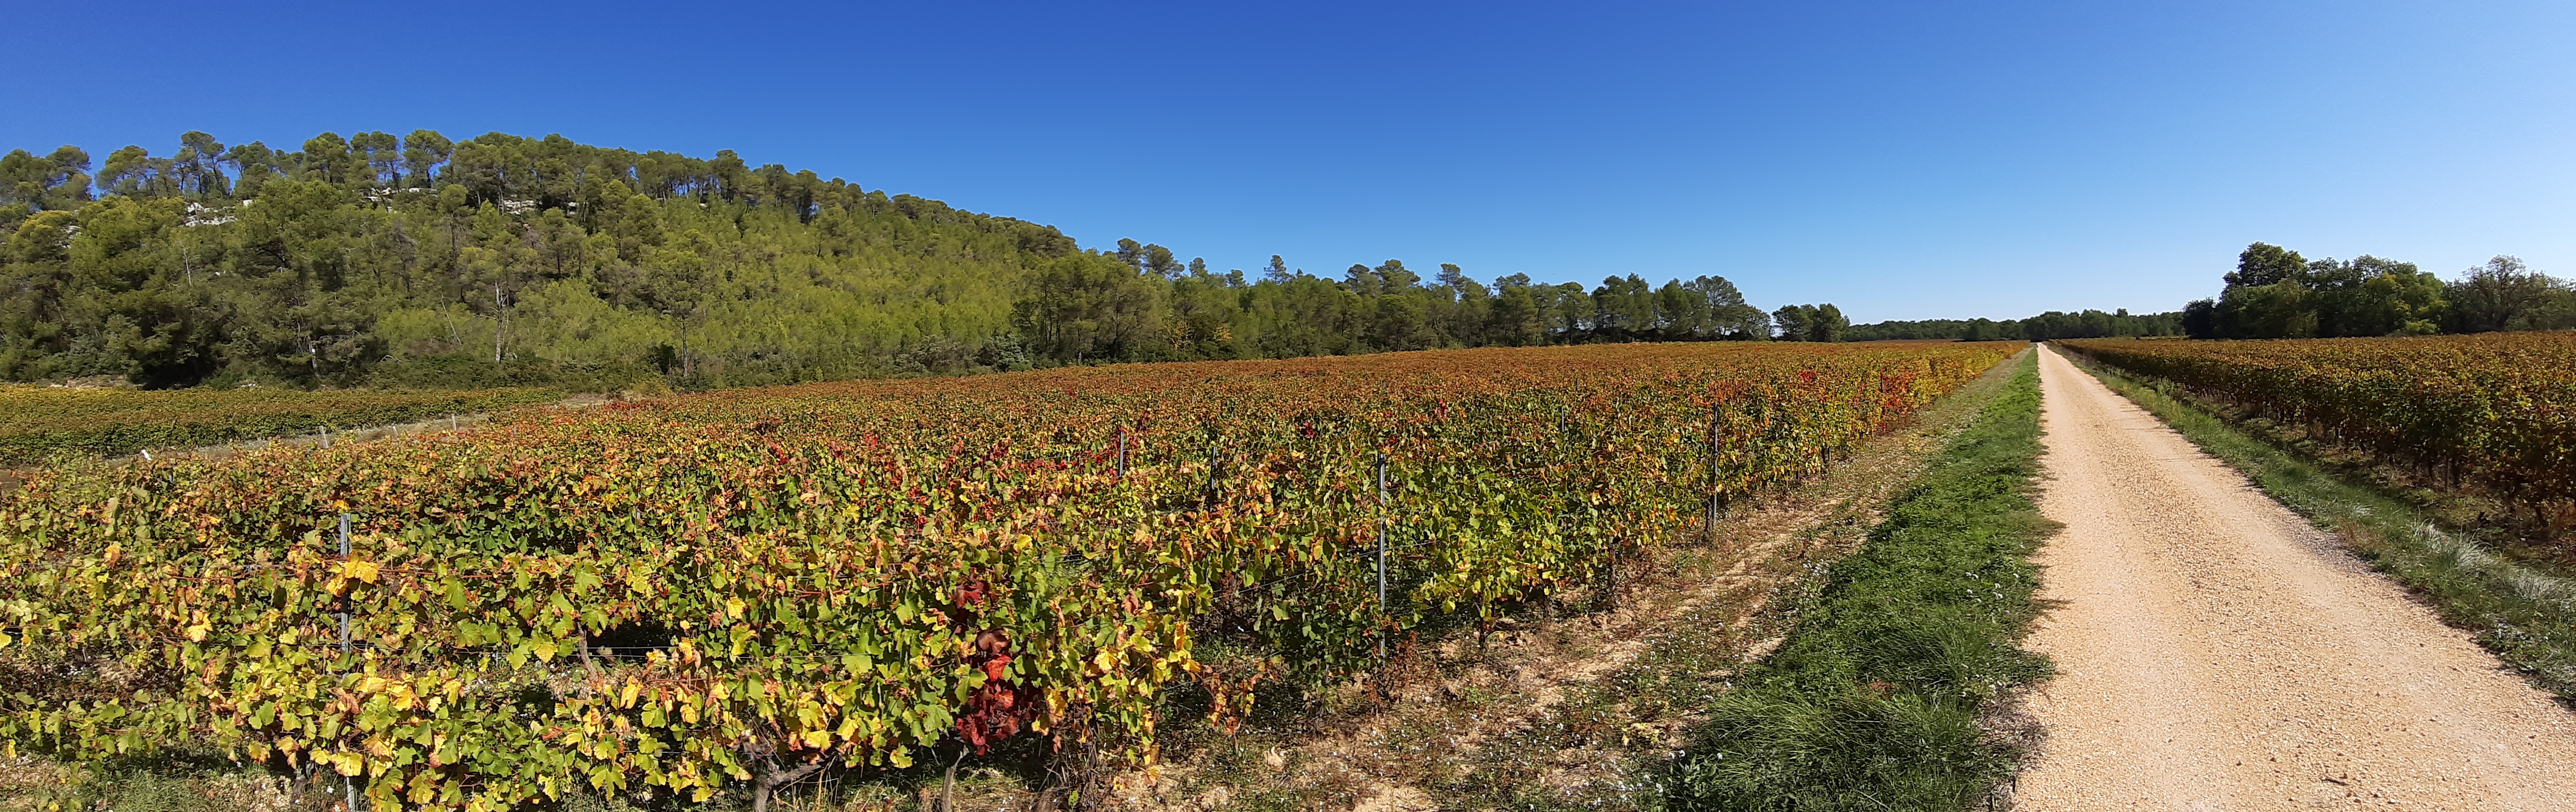 Le mémento viticole de l’automne